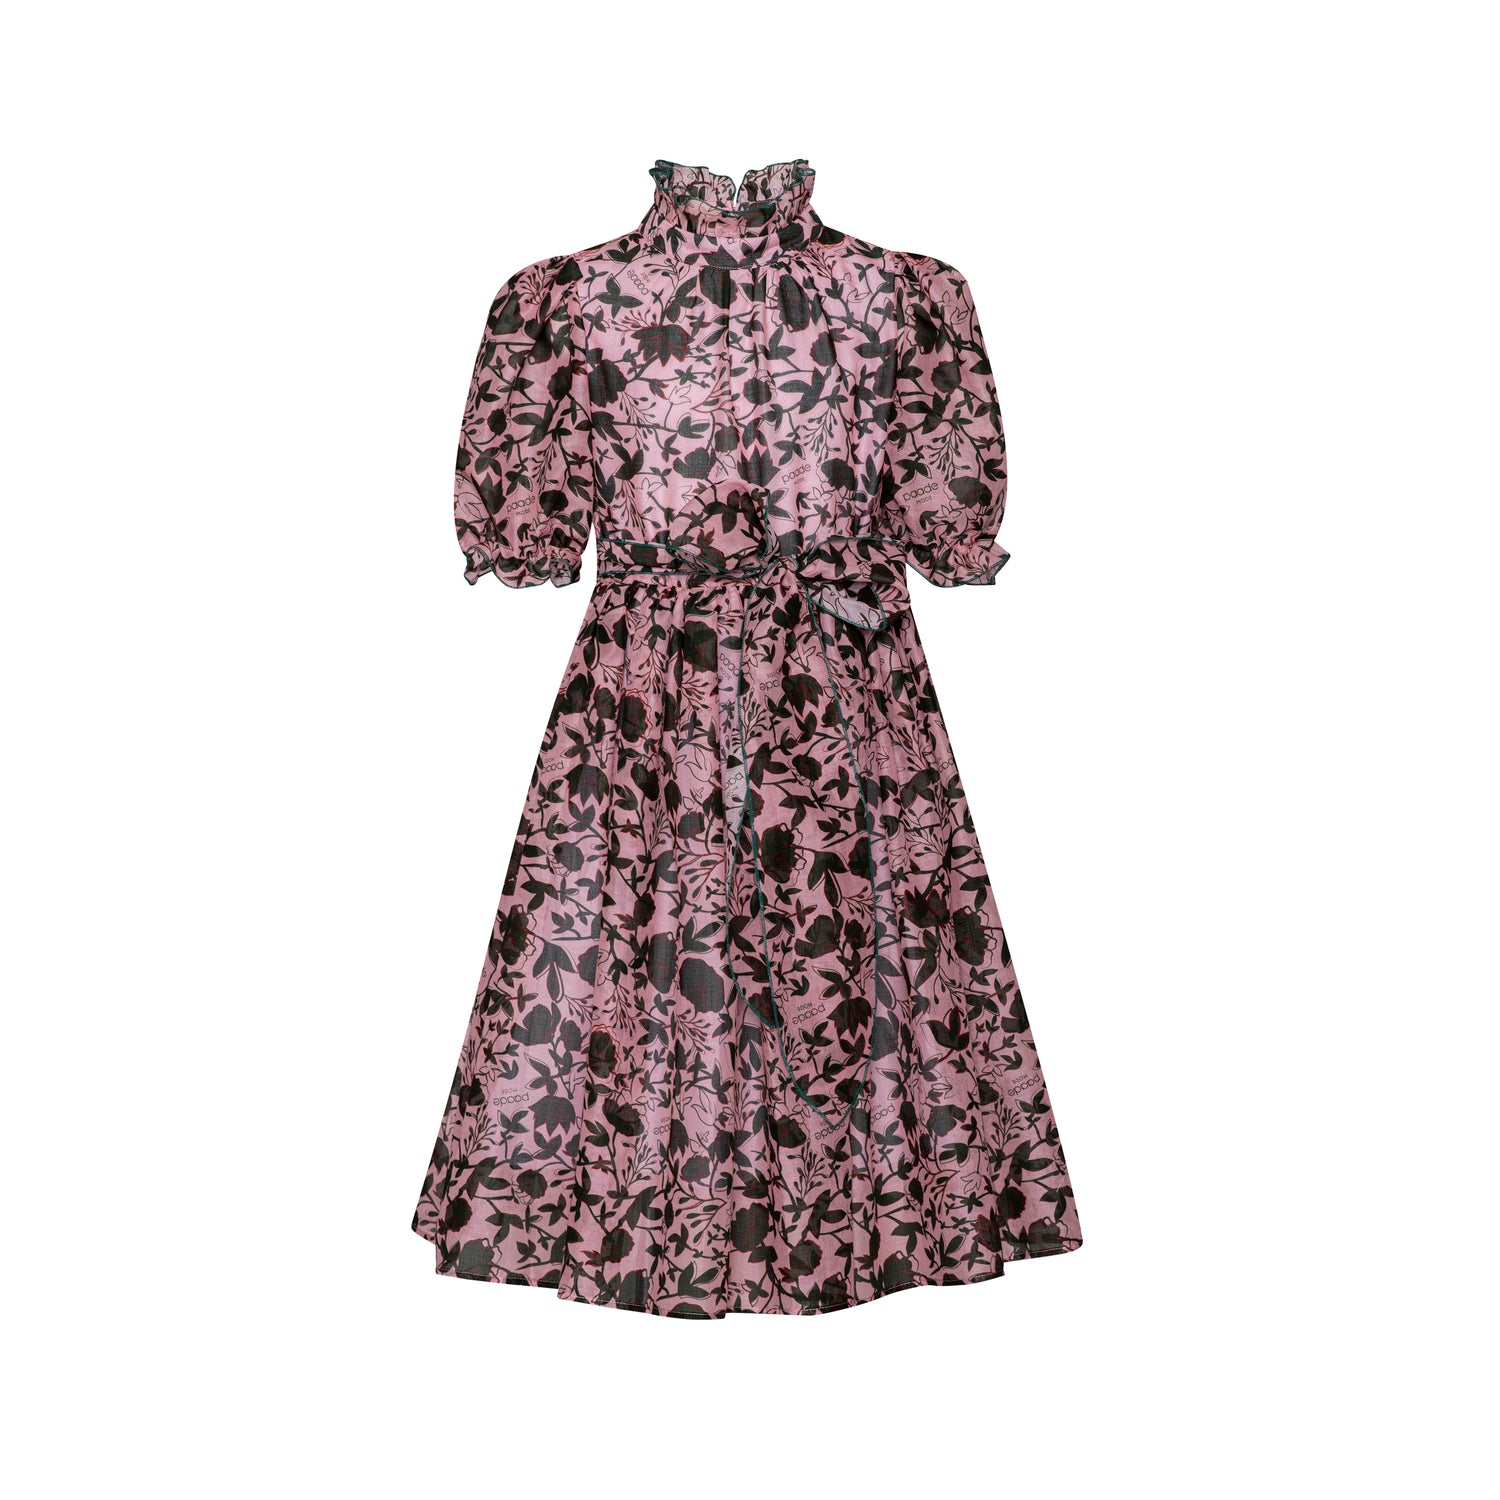 Paade Mode Chiffon Printed Maxi Dress - Pink